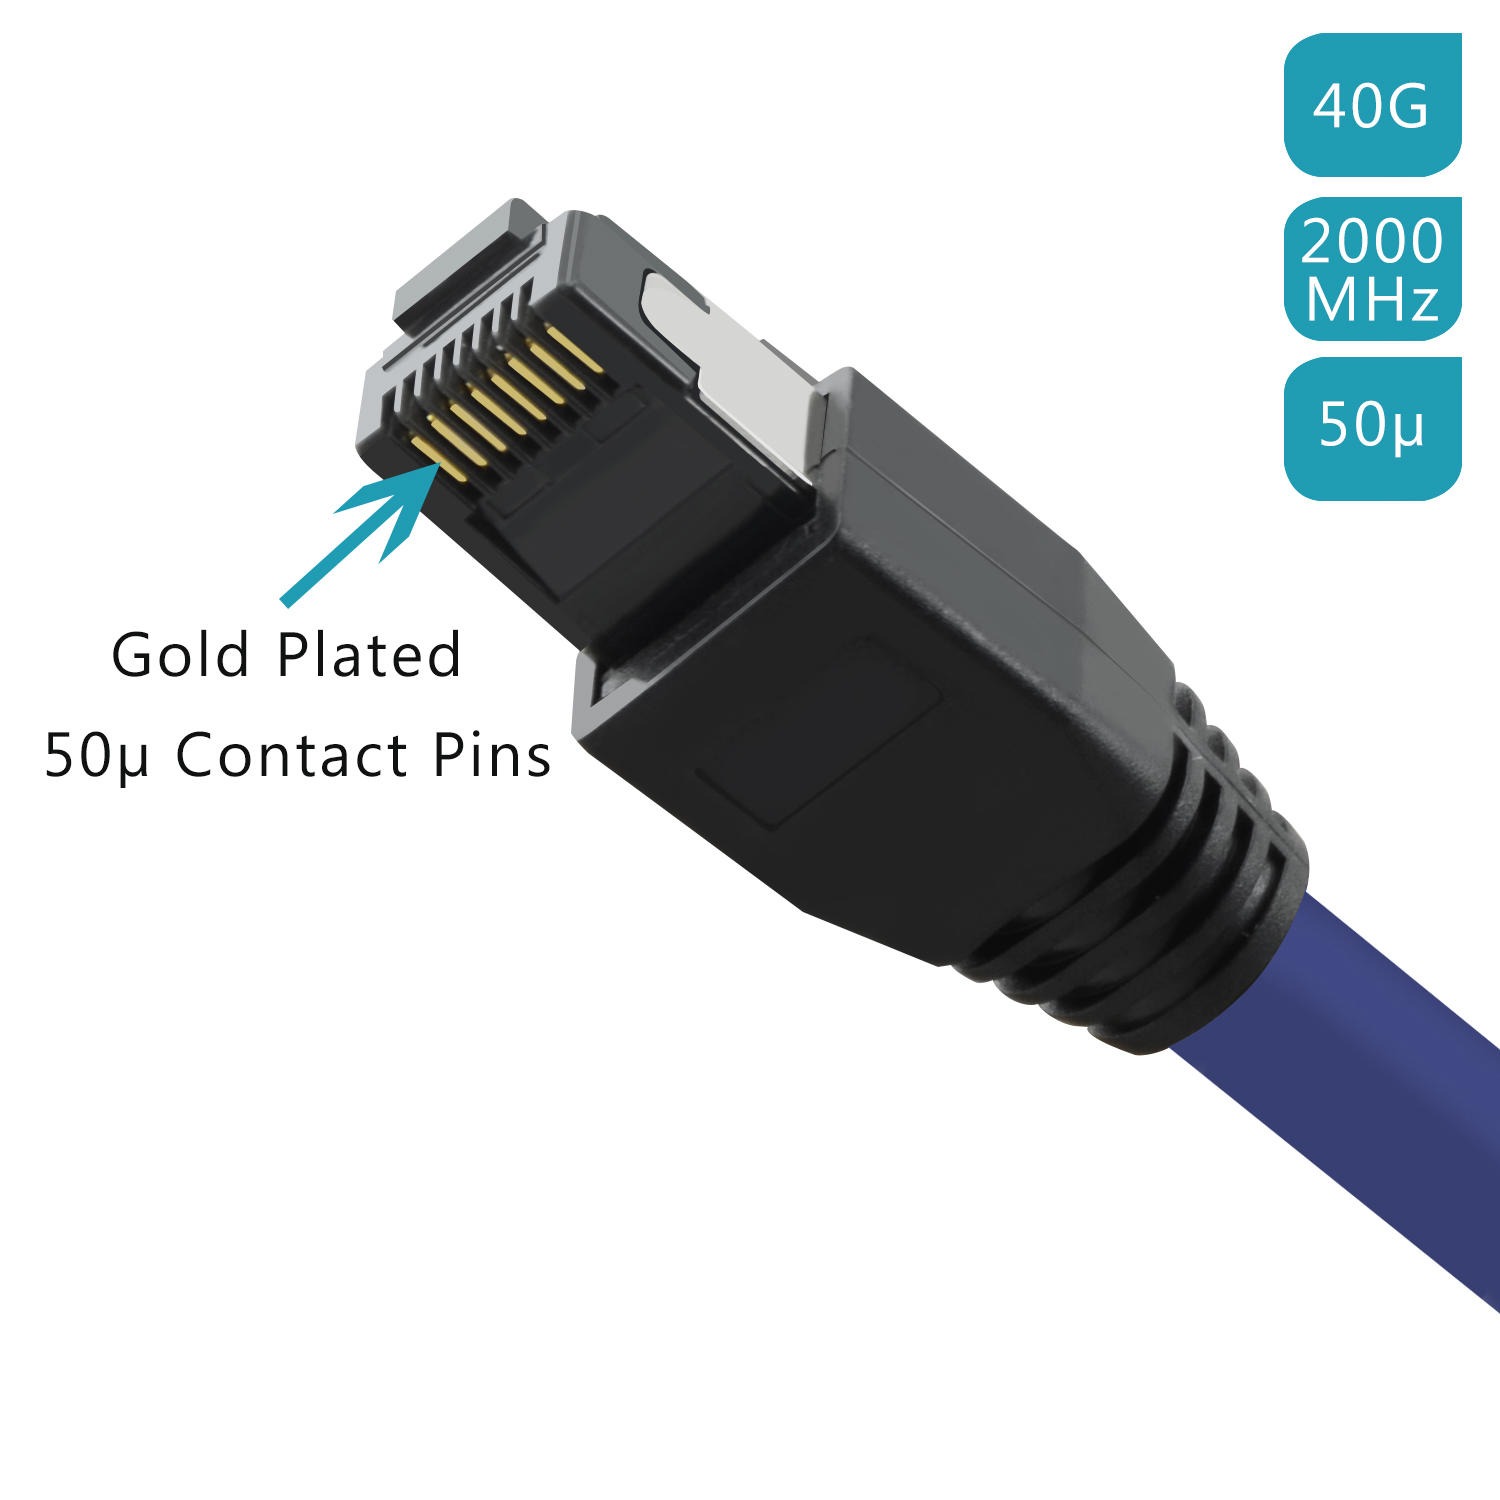 TPFNET 0,25m Patchkabel / m GBit, 0,25 Netzwerkkabel S/FTP Netzwerkkabel, violett, 40